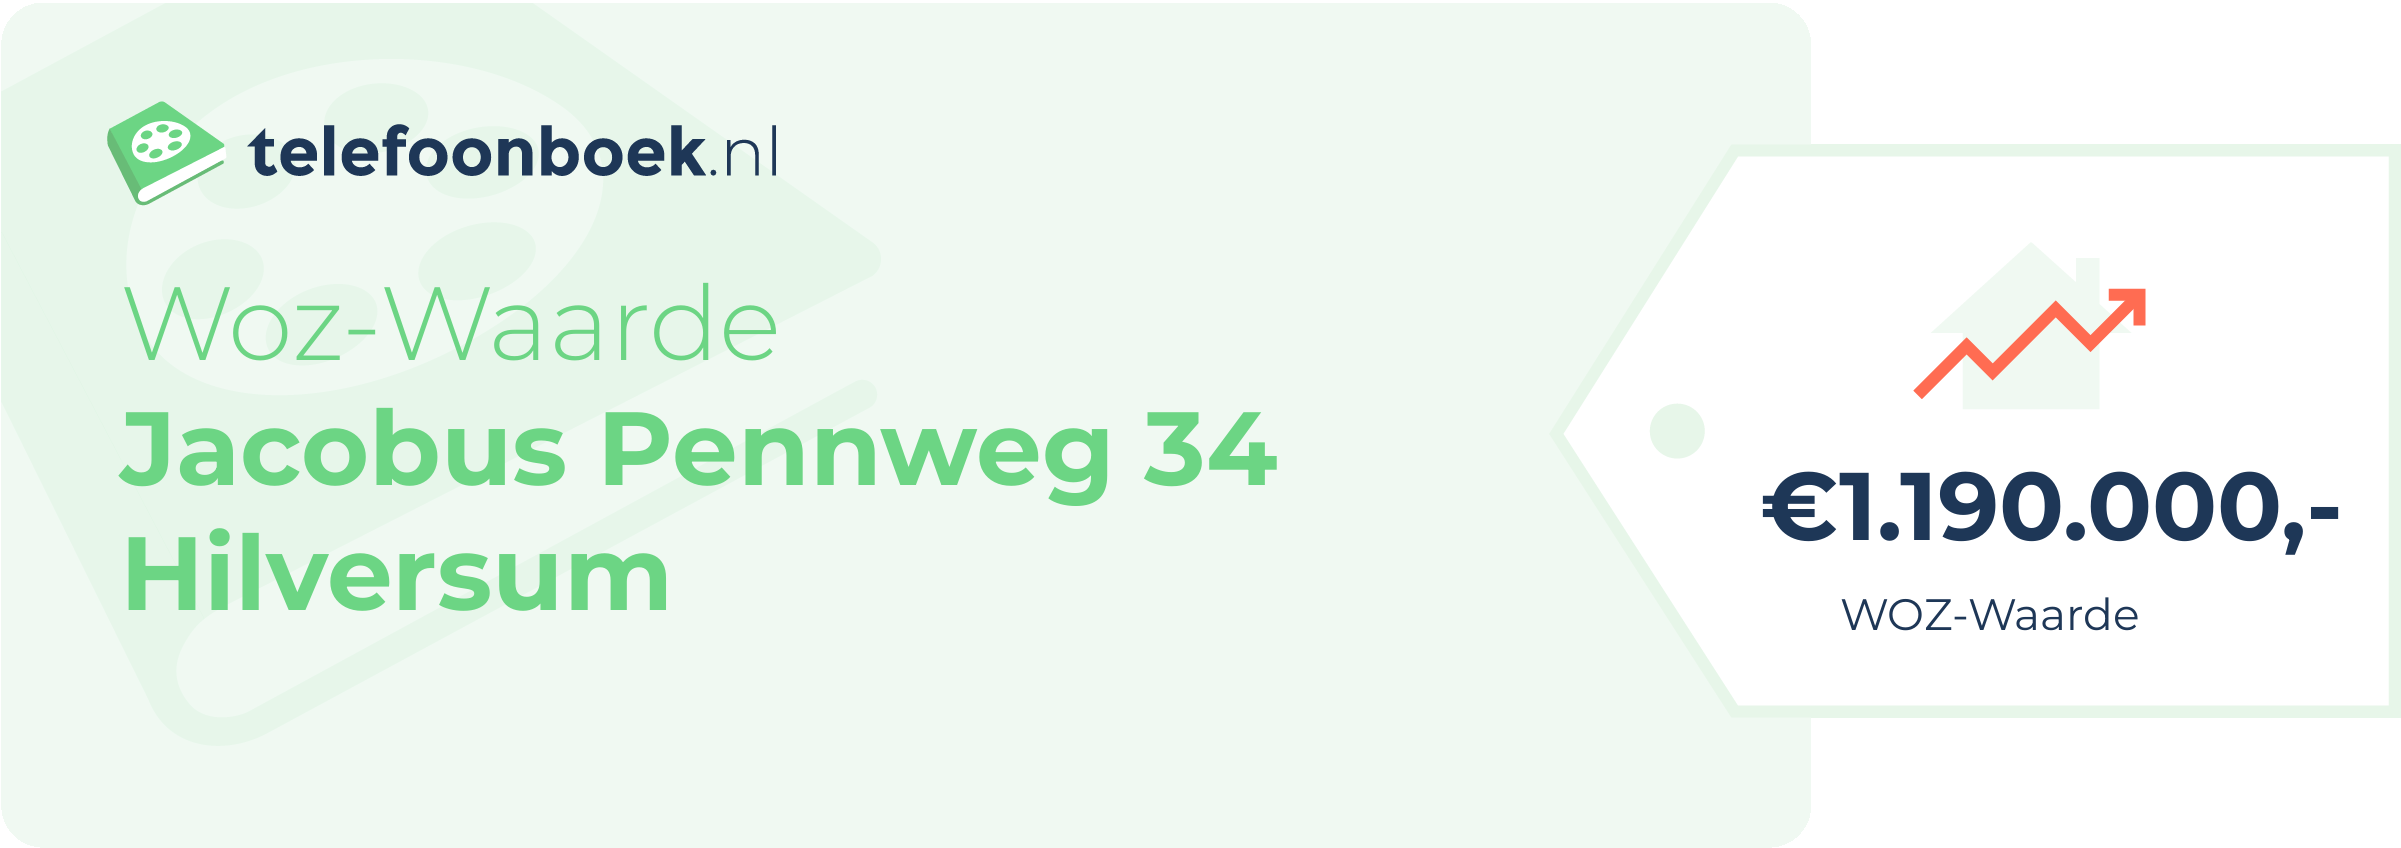 WOZ-waarde Jacobus Pennweg 34 Hilversum